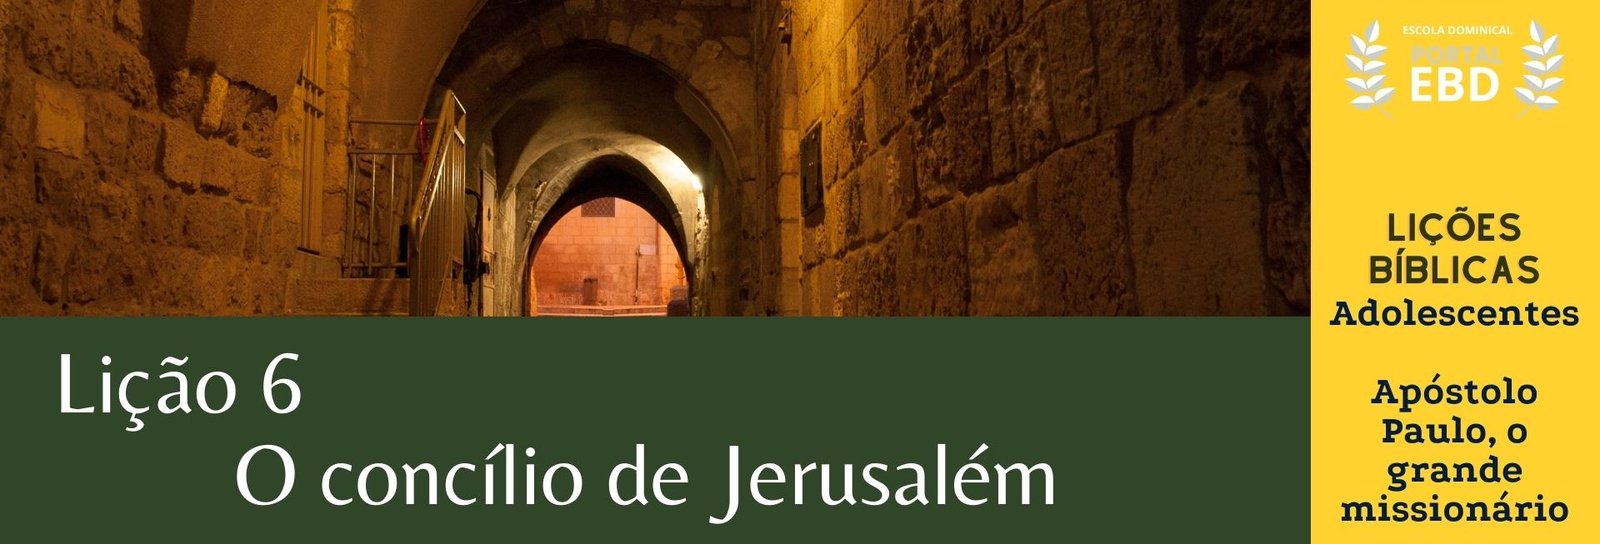 Lição 6 - O concílio de Jerusalém - SLIDES E VIDEOAULAS 